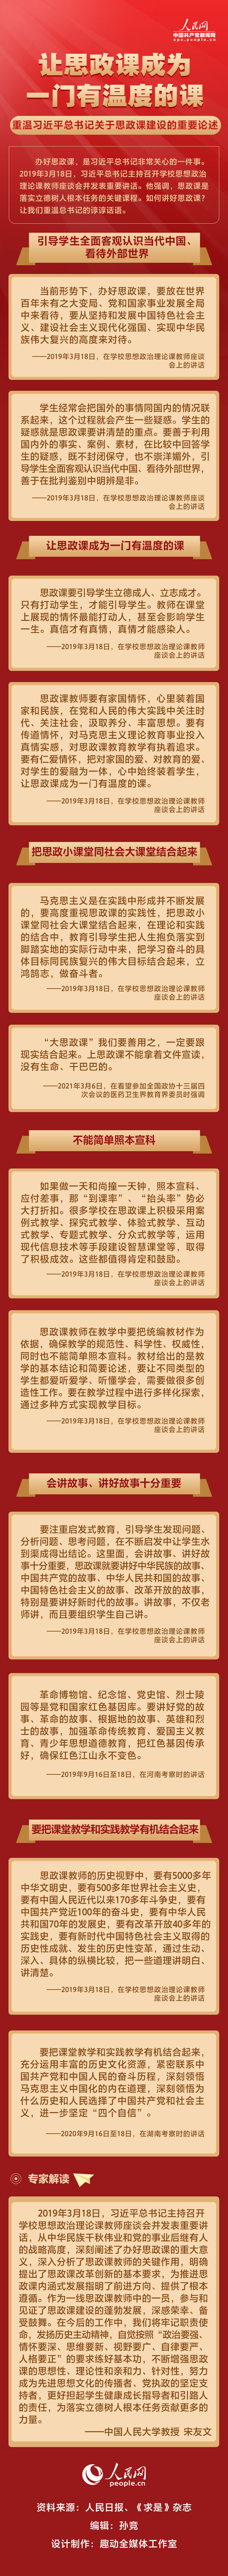 宁夏1076个重大项目集中开工有力促进经济平稳健康发展明朝所有皇帝齐聚地府